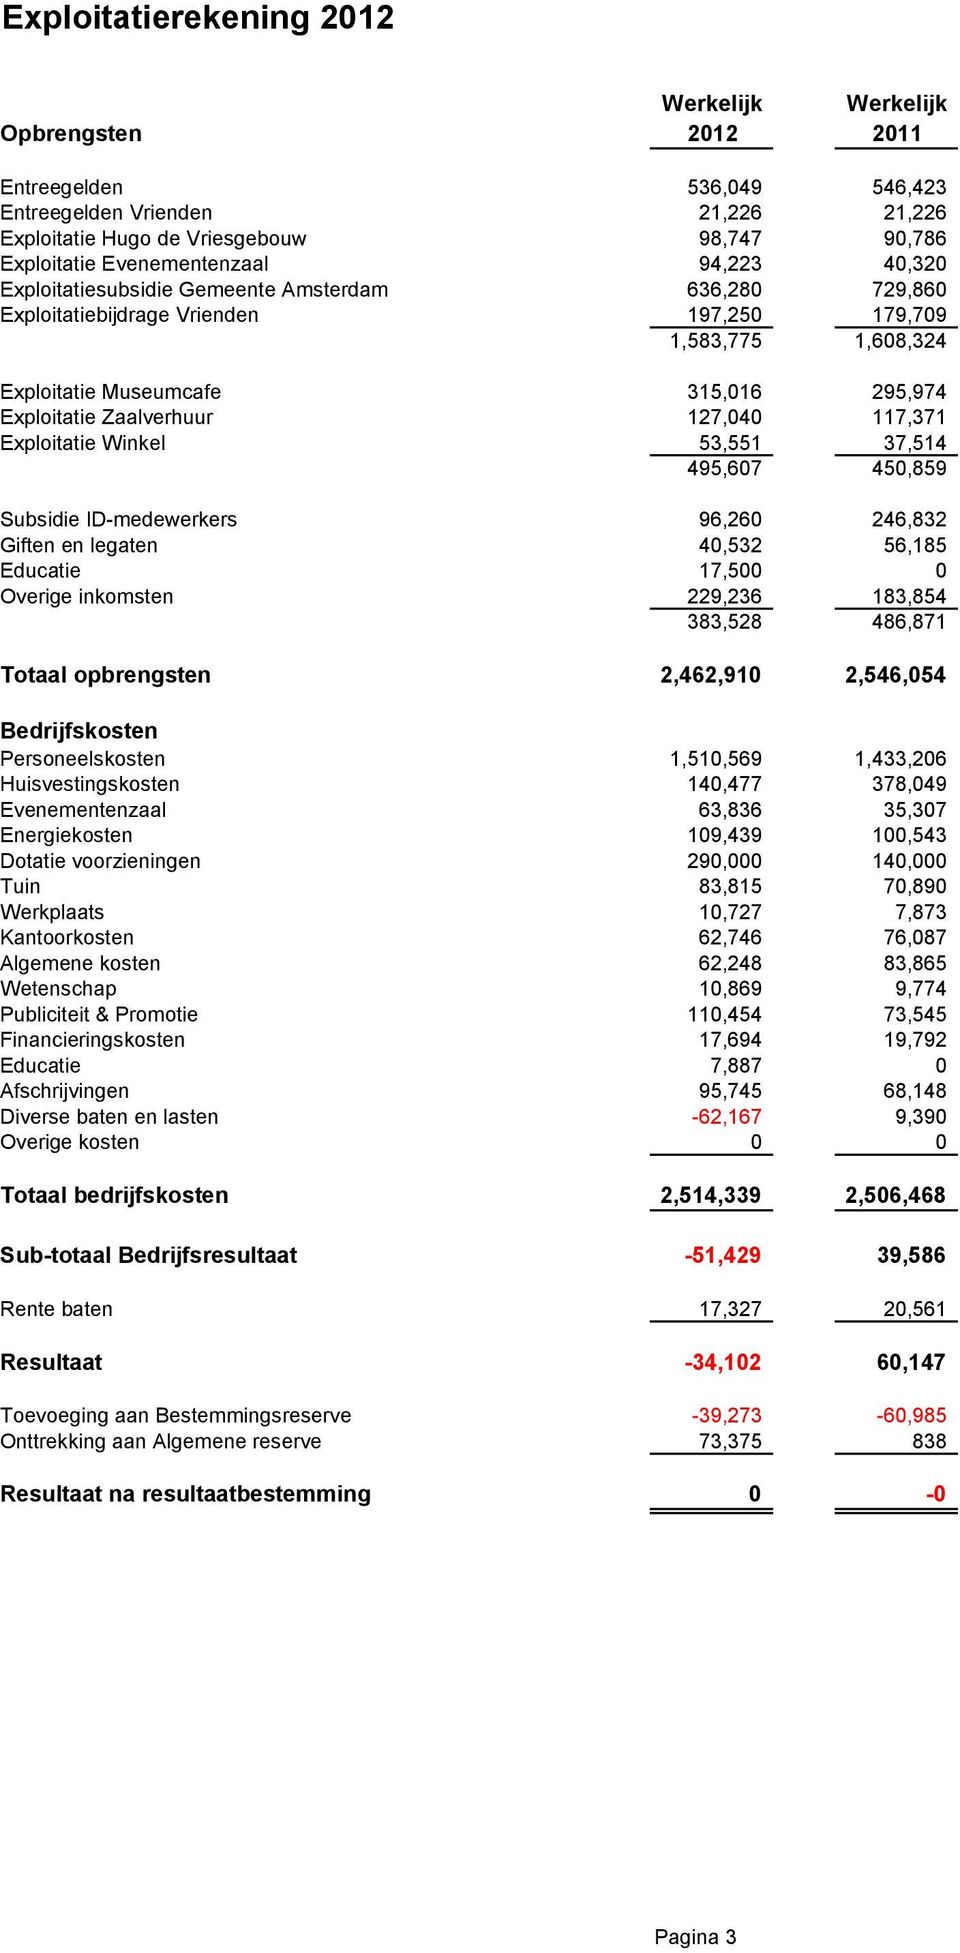 Exploitatie Zaalverhuur 127,040 117,371 Exploitatie Winkel 53,551 37,514 495,607 450,859 Subsidie ID-medewerkers 96,260 246,832 Giften en legaten 40,532 56,185 Educatie 17,500 0 Overige inkomsten